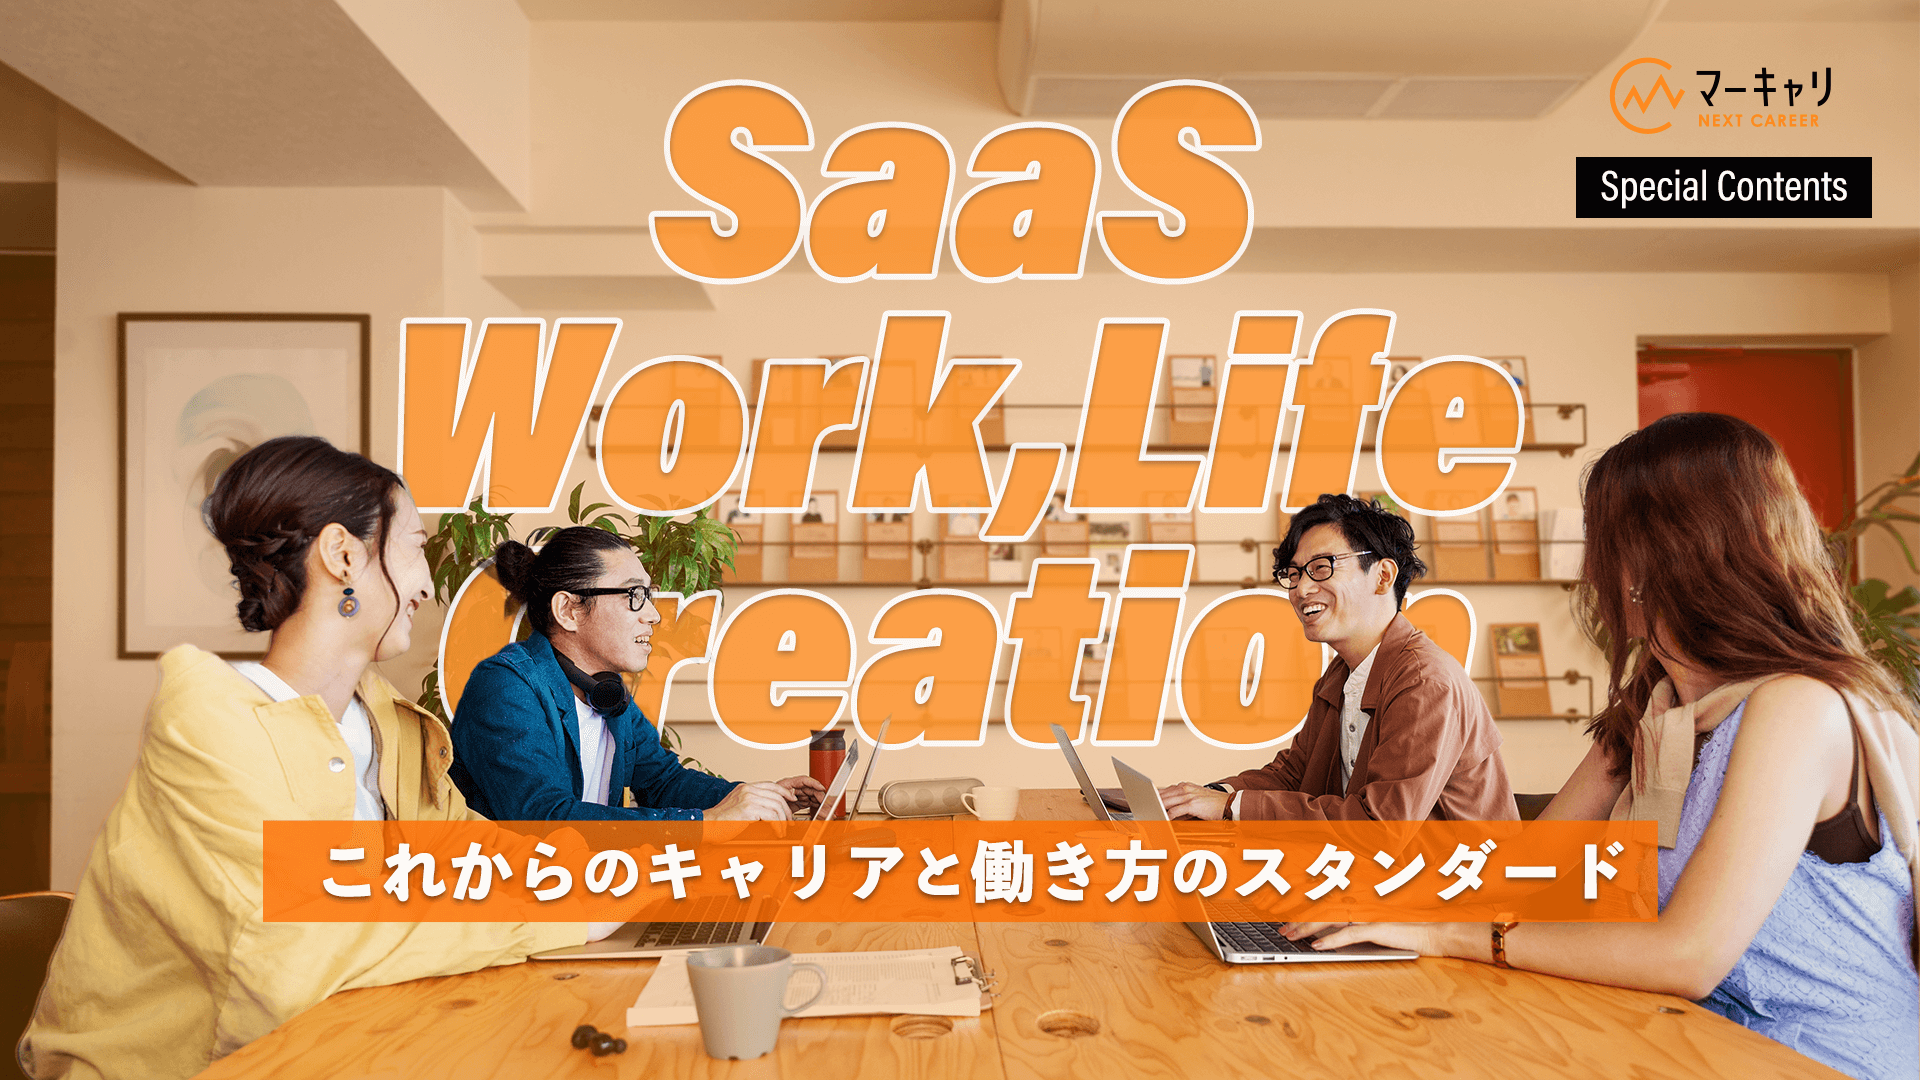 SaaS Work, Life Creation  これからのキャリアと働き方のスタンダード